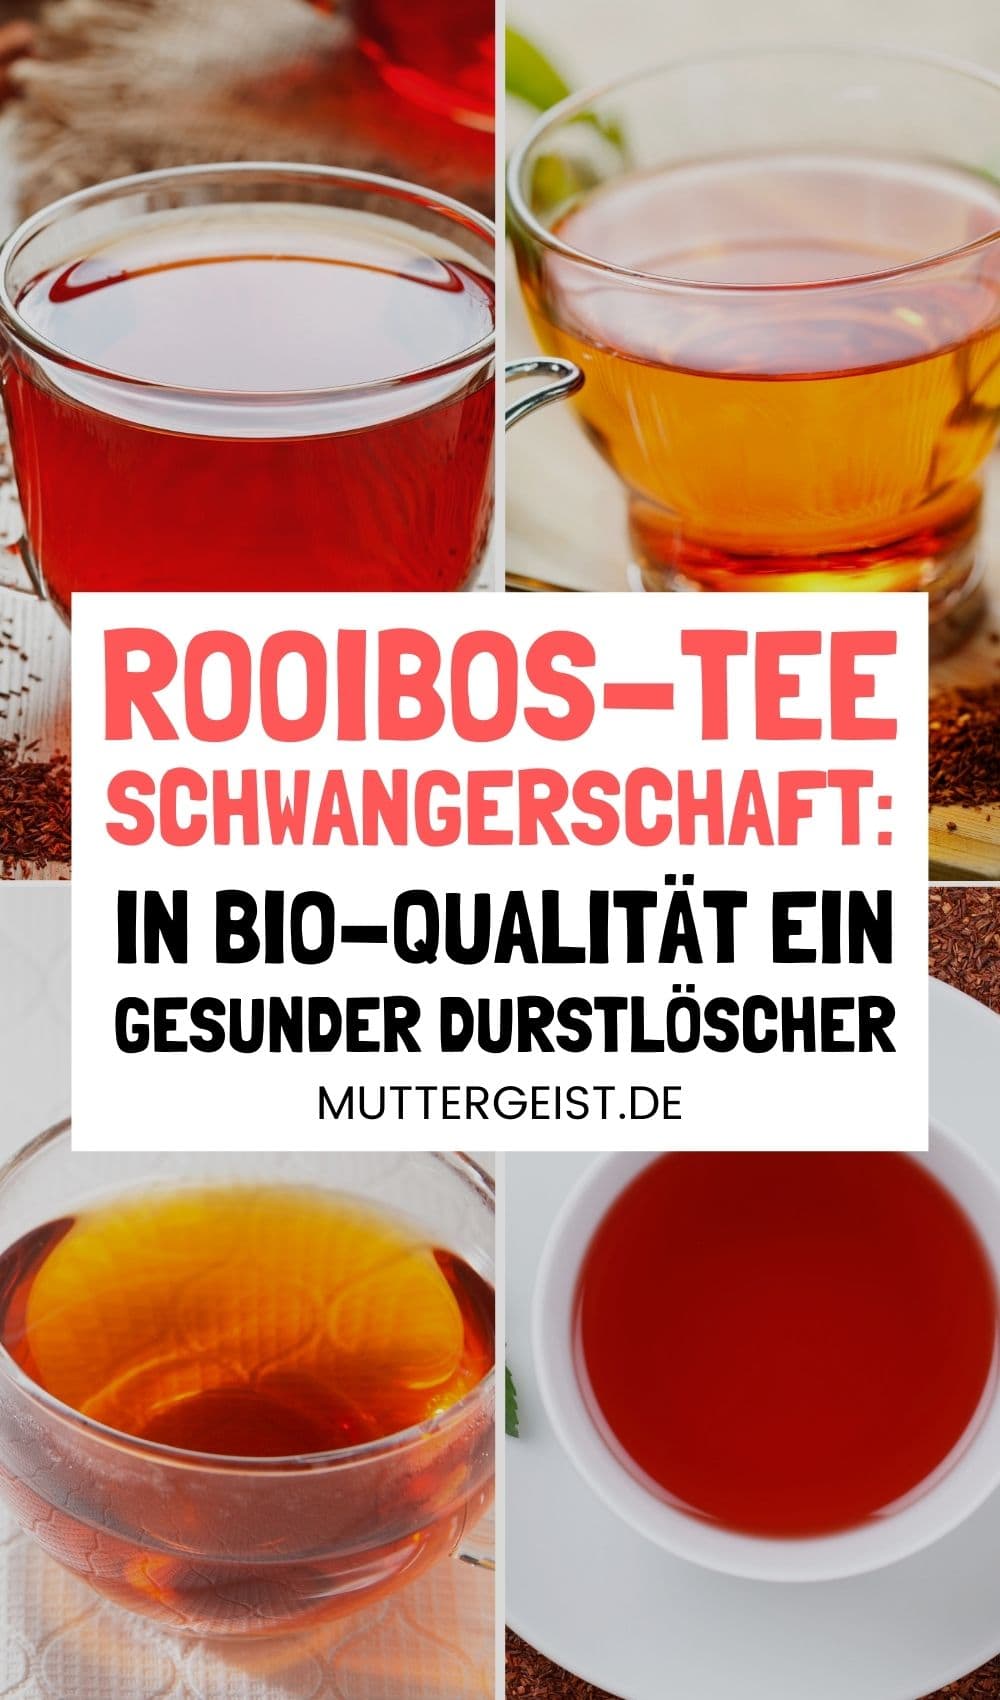 Rooibos-Tee Schwangerschaft – In BIO-Qualität ein gesunder Durstlöscher Pinterest